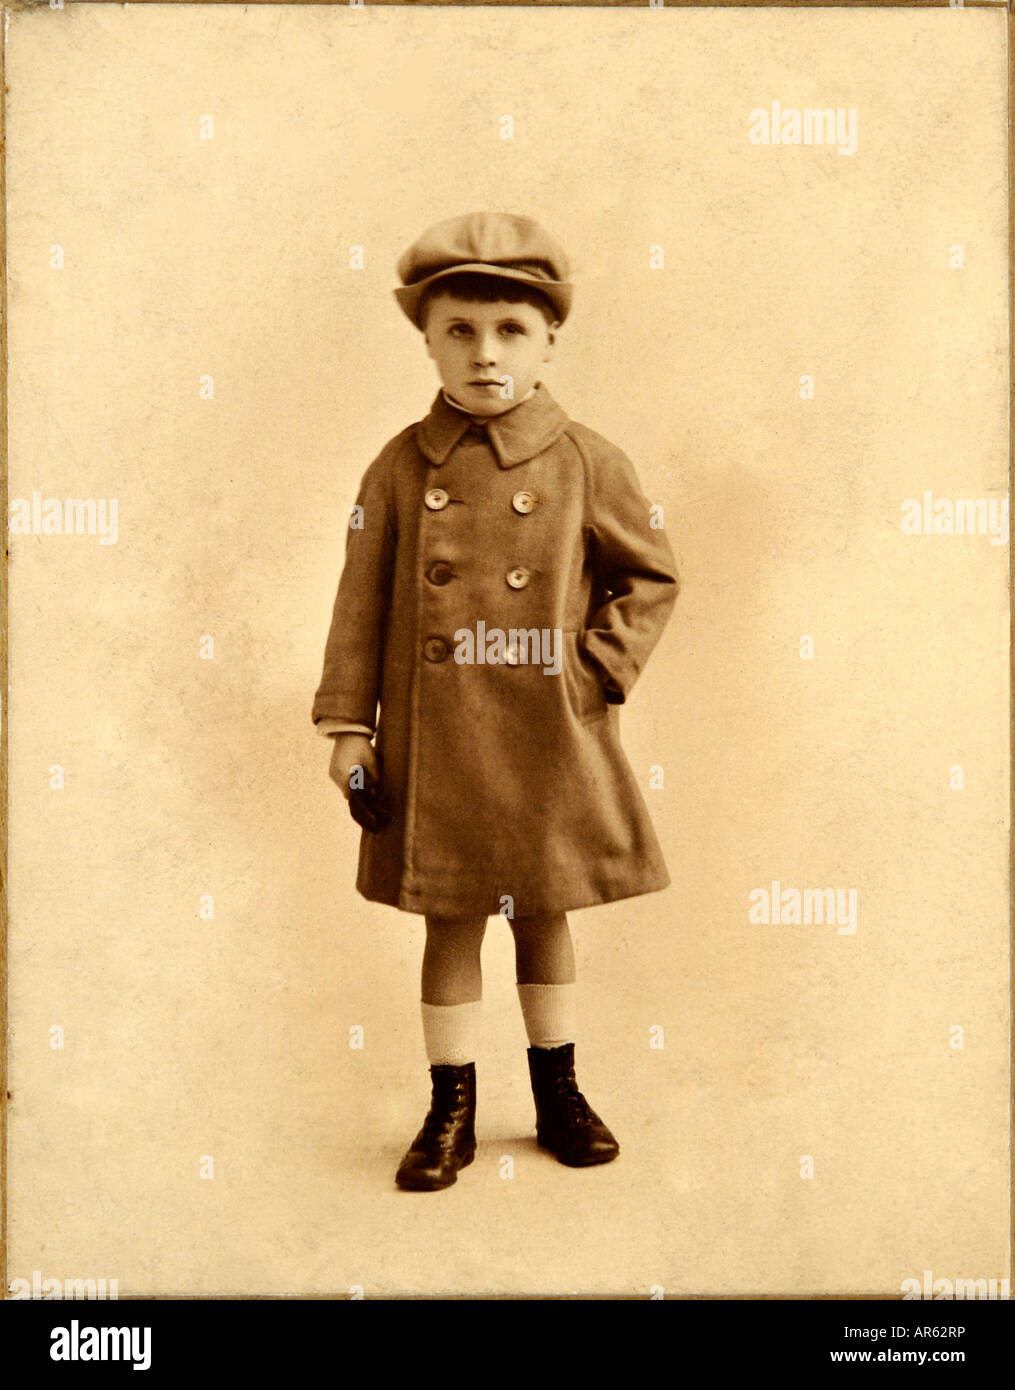 Edwardian jungen in alten Sepia Foto von anonymen Fotografen 1900er Jahren Stockfoto